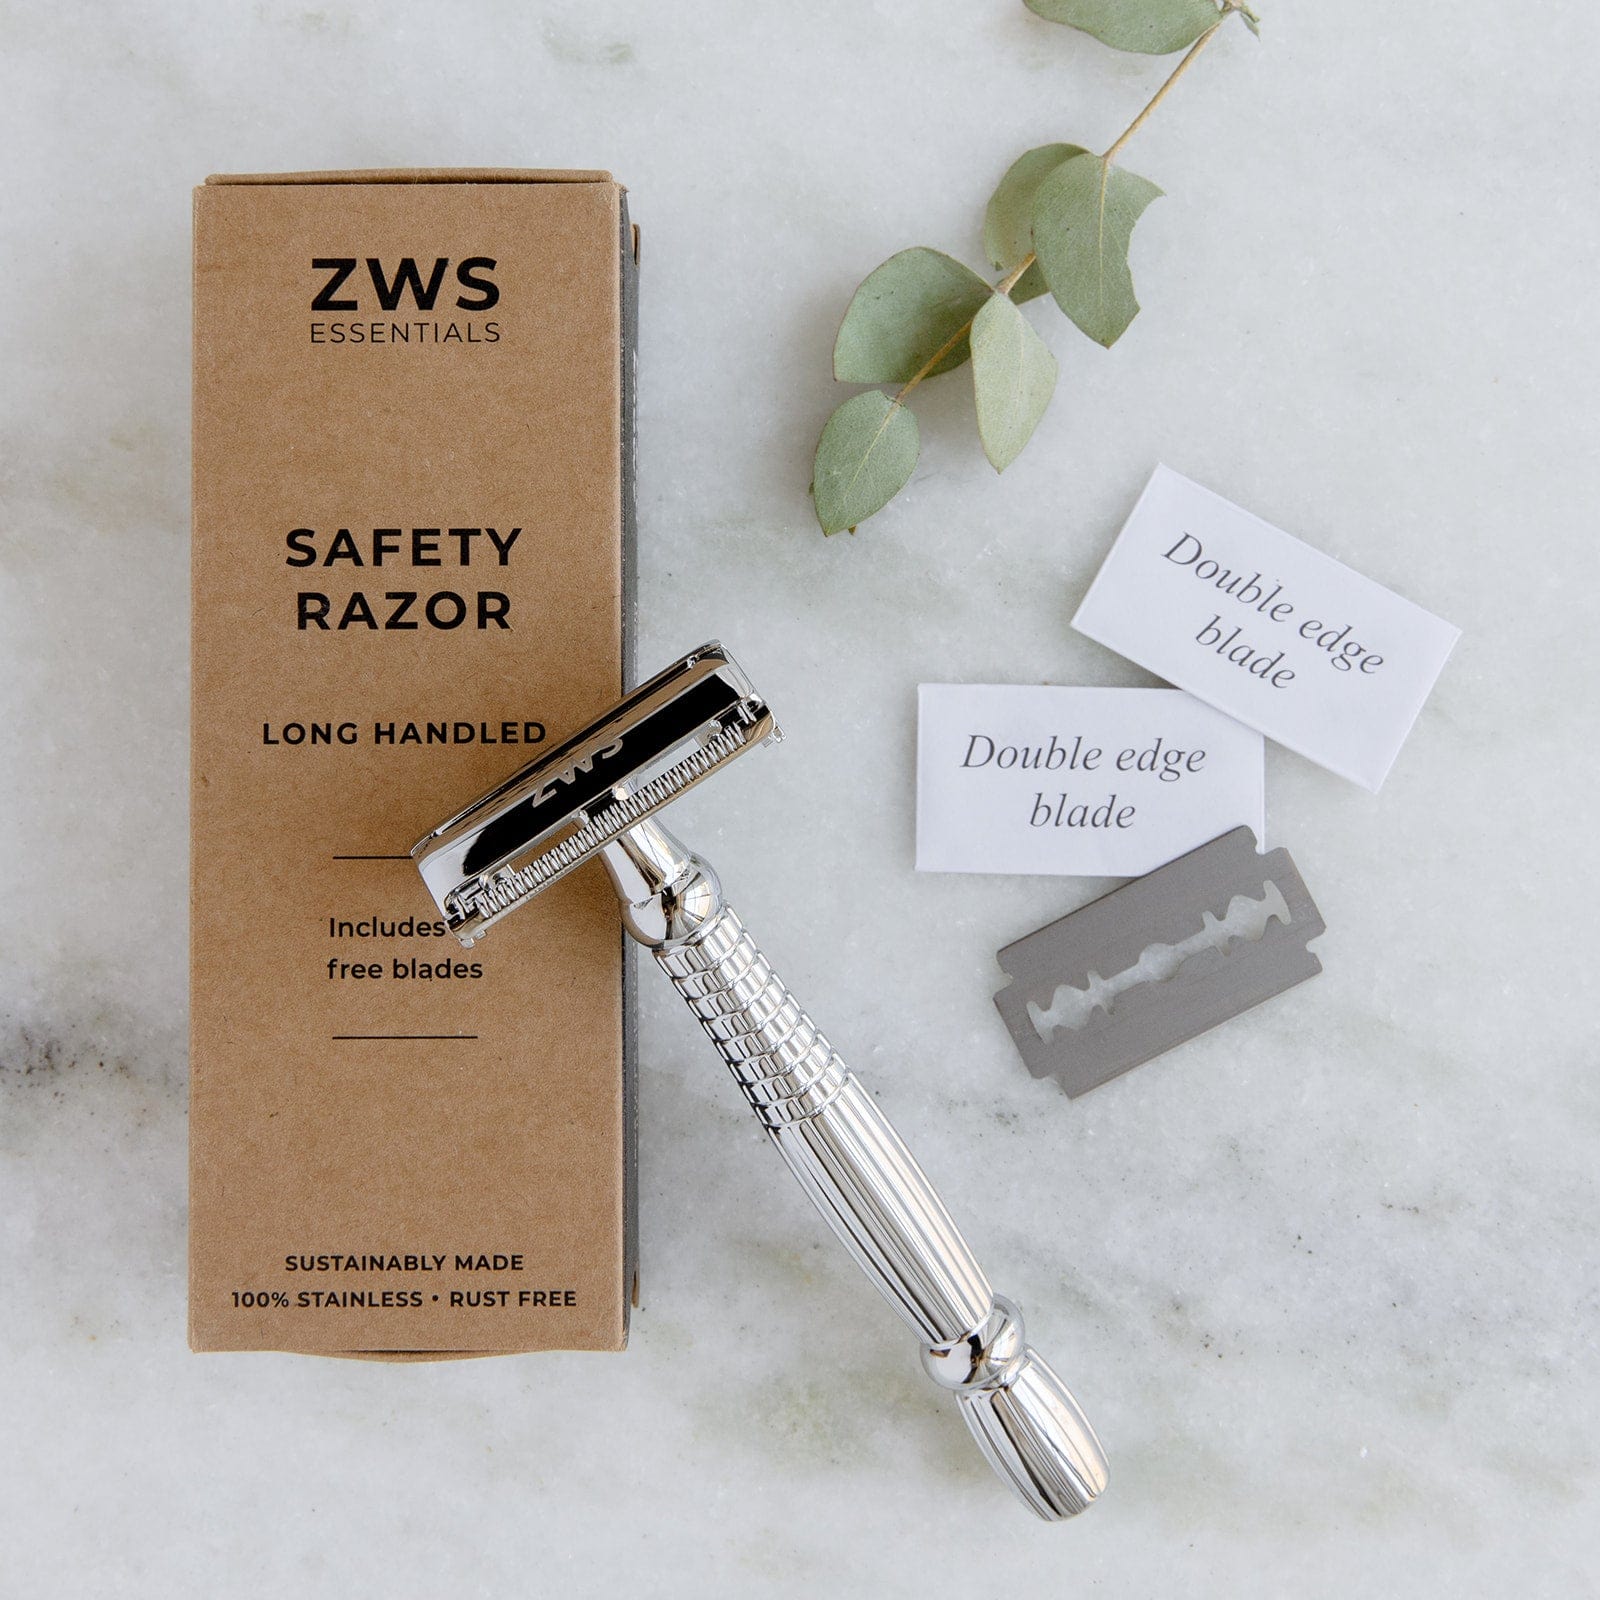 ZWS Essentials Long Handle Zero Waste Safety Razor - Sustainable Razor - Stainless Steel, Single Blade, 10 Free Blades